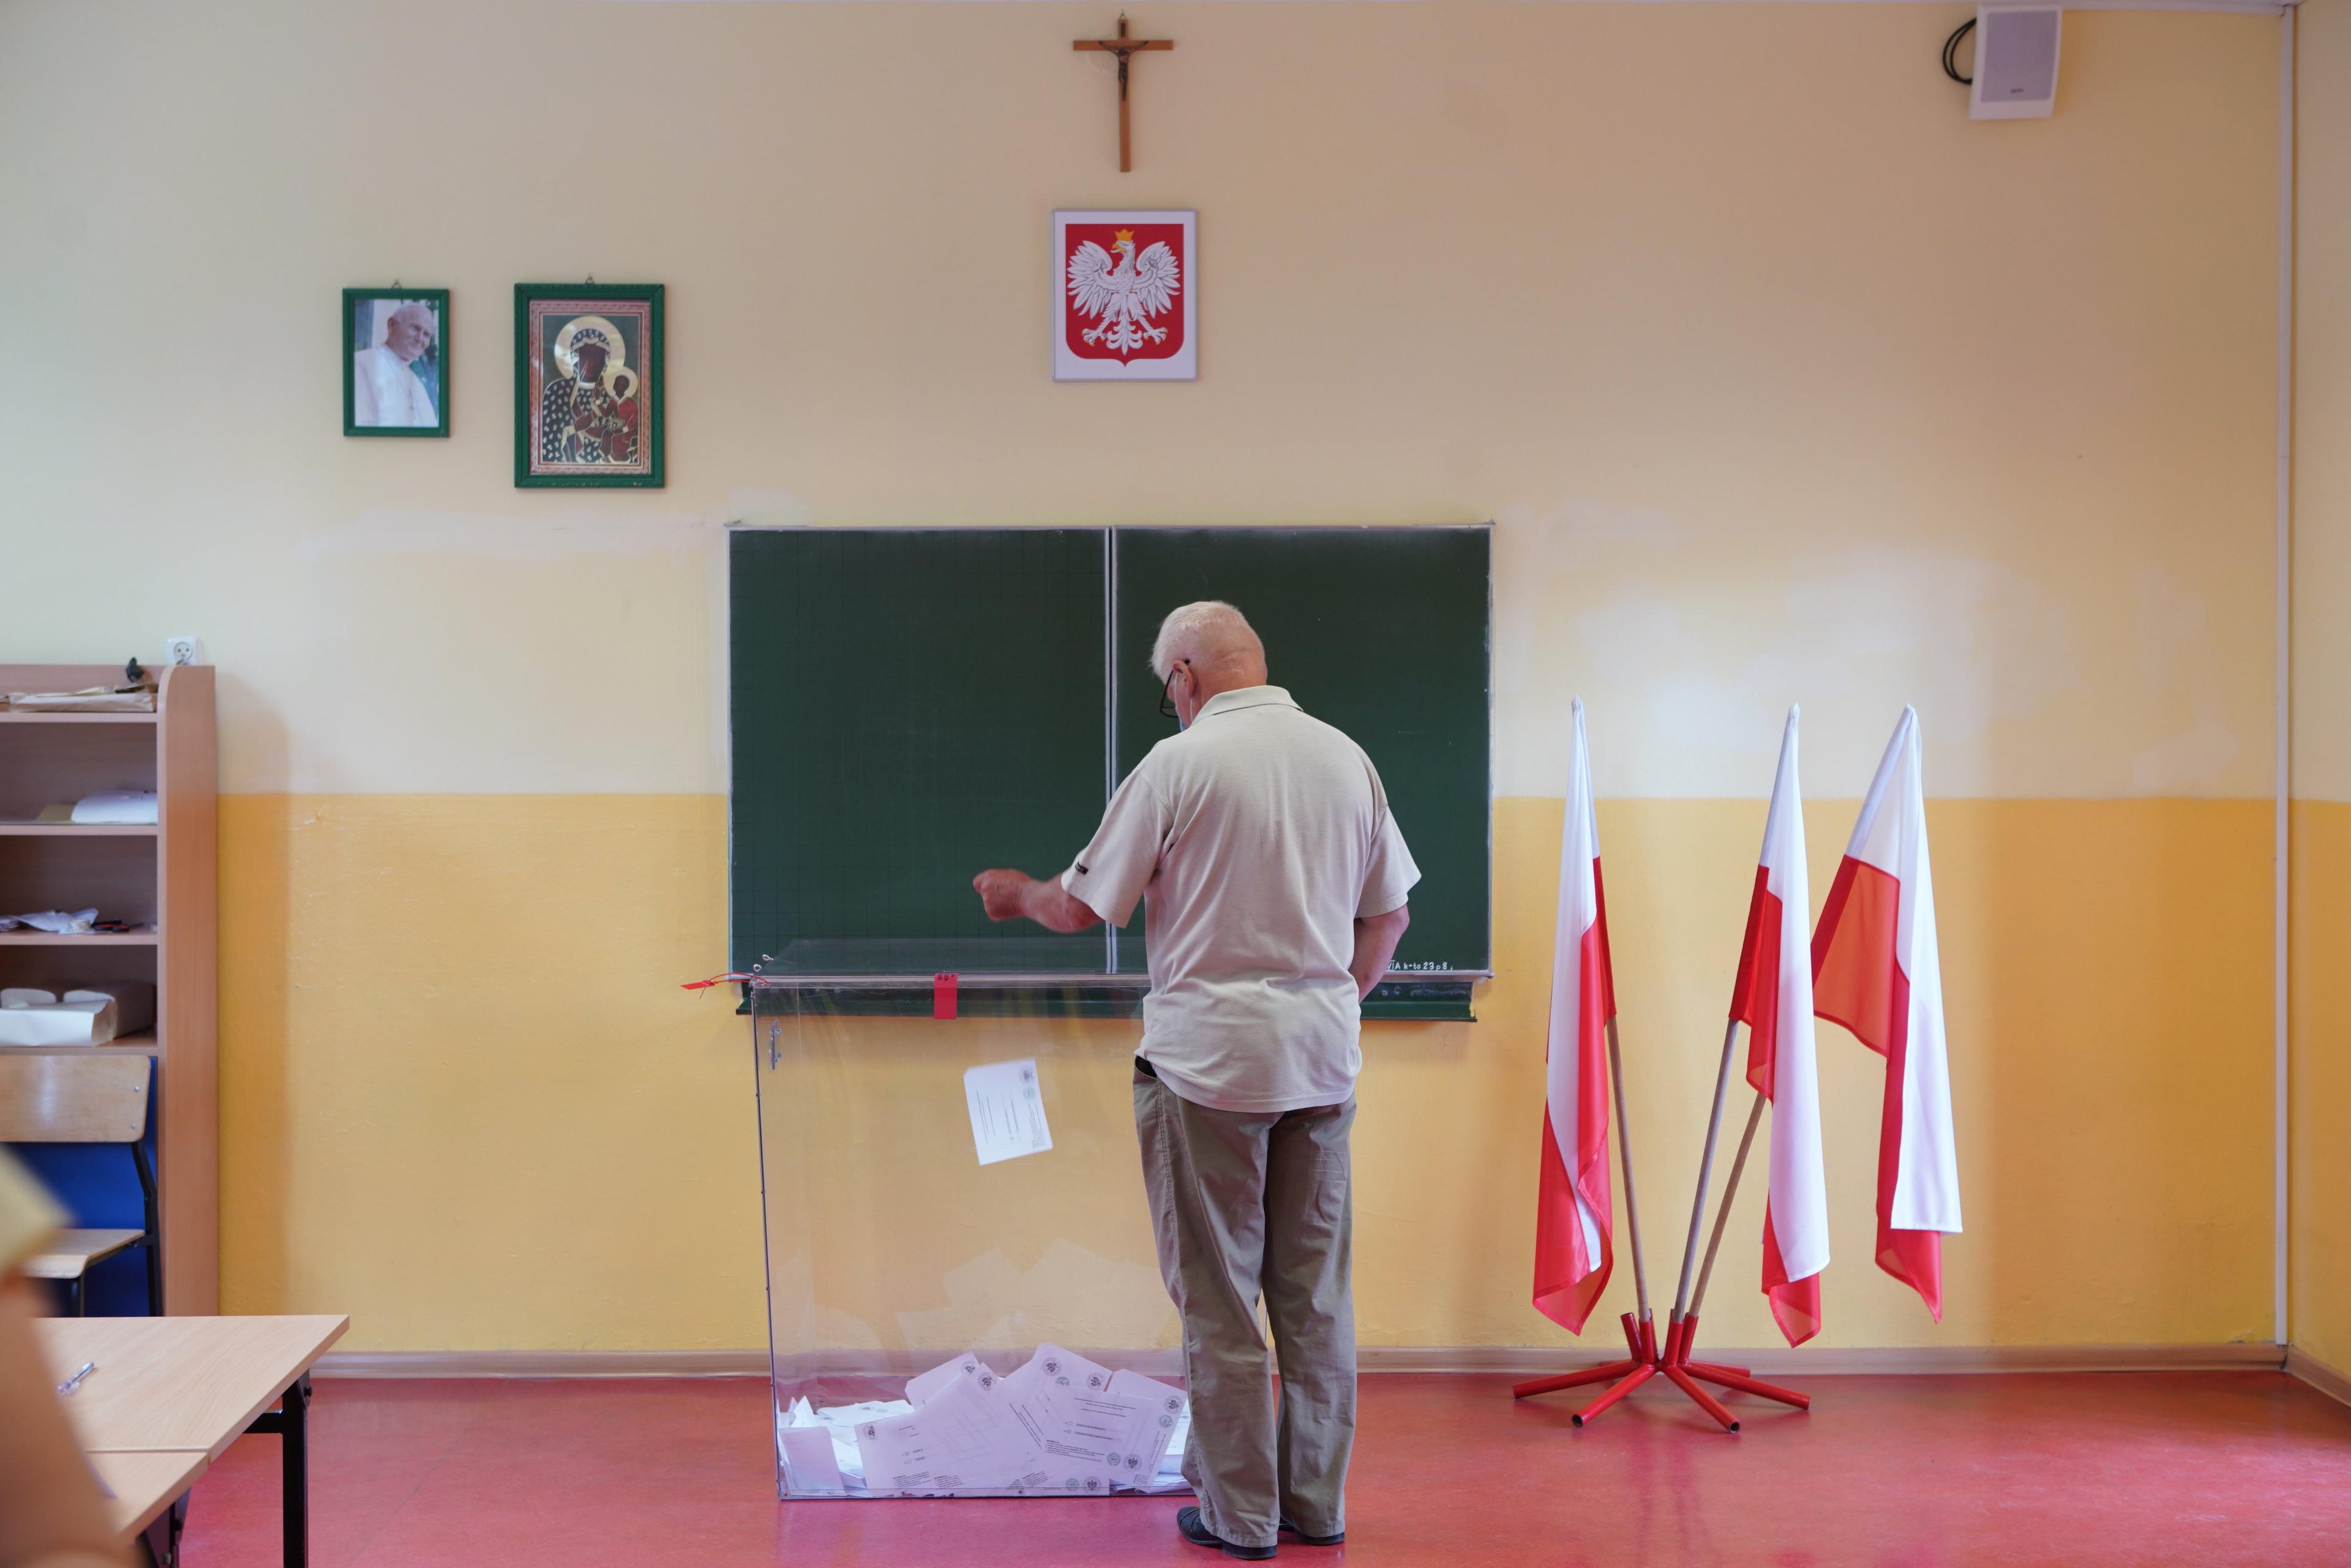 Na zdjęciu widać szkolną klasę z godłem, tablicą i krzyżem na ścianie. Mężczyzna w starszym wieku wrzuca kartę do głosowania do przezroczystej urny wyborczej. Obok stoją trzy polskie flagi